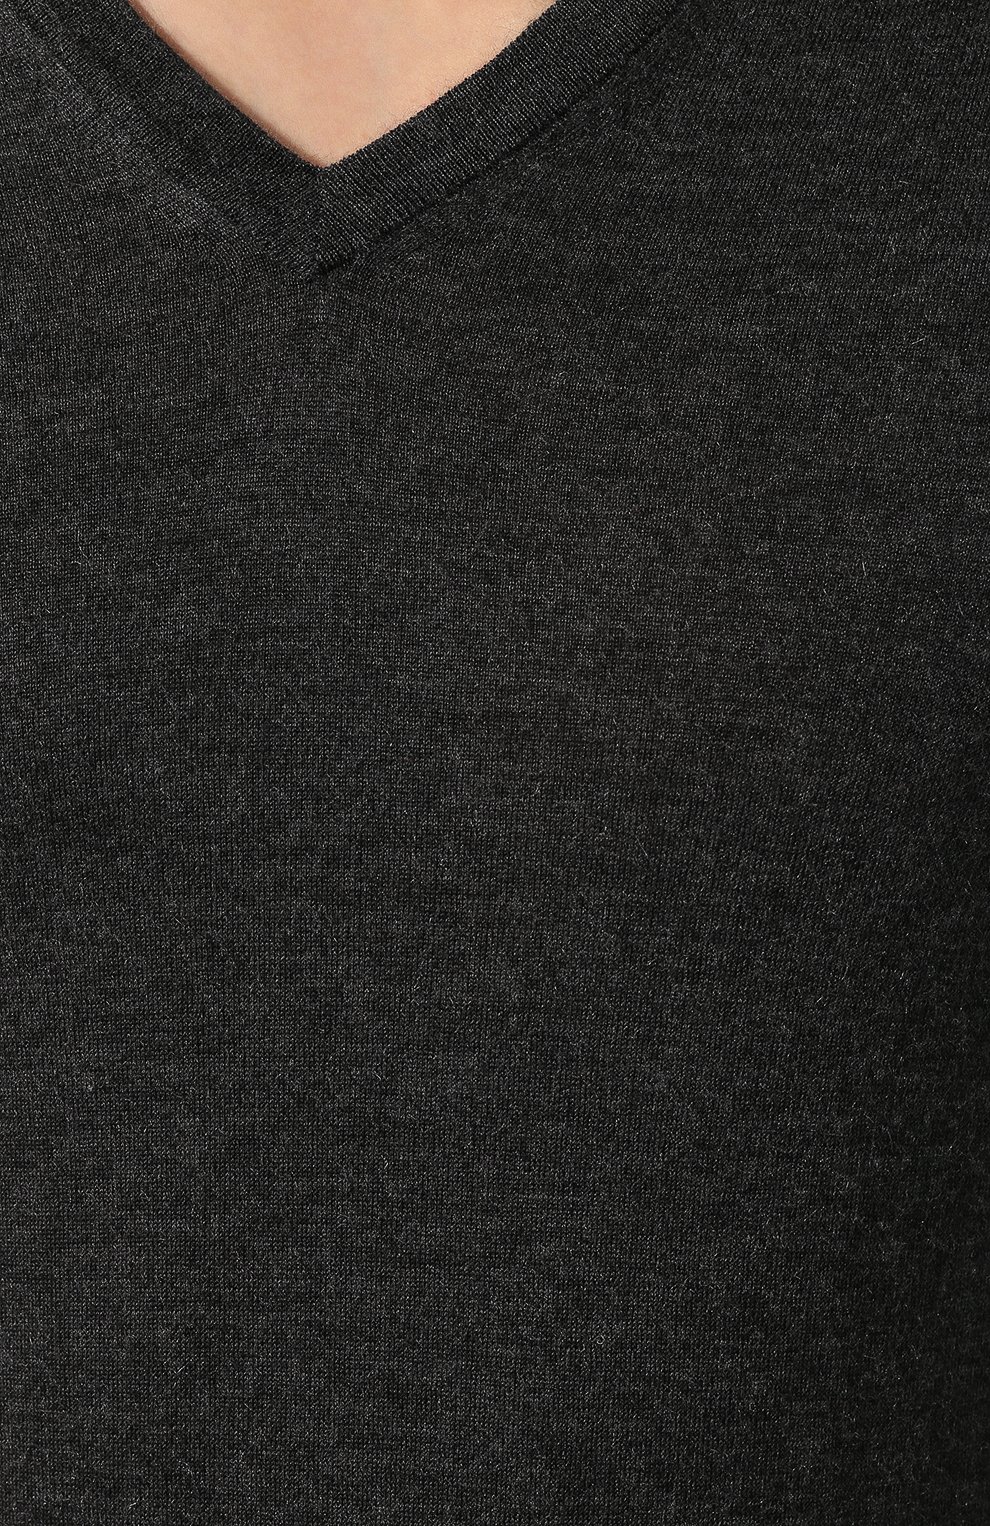 Мужской пуловер из смеси кашемира и шелка SVEVO темно-серого цвета, арт. 0671SA19/MP06/2 | Фото 5 (Материал внешний: Шерсть, Кашемир; Рукава: Длинные; Принт: Без принта; Длина (для топов): Стандартные; Вырез: V-образный; Мужское Кросс-КТ: Пуловеры)